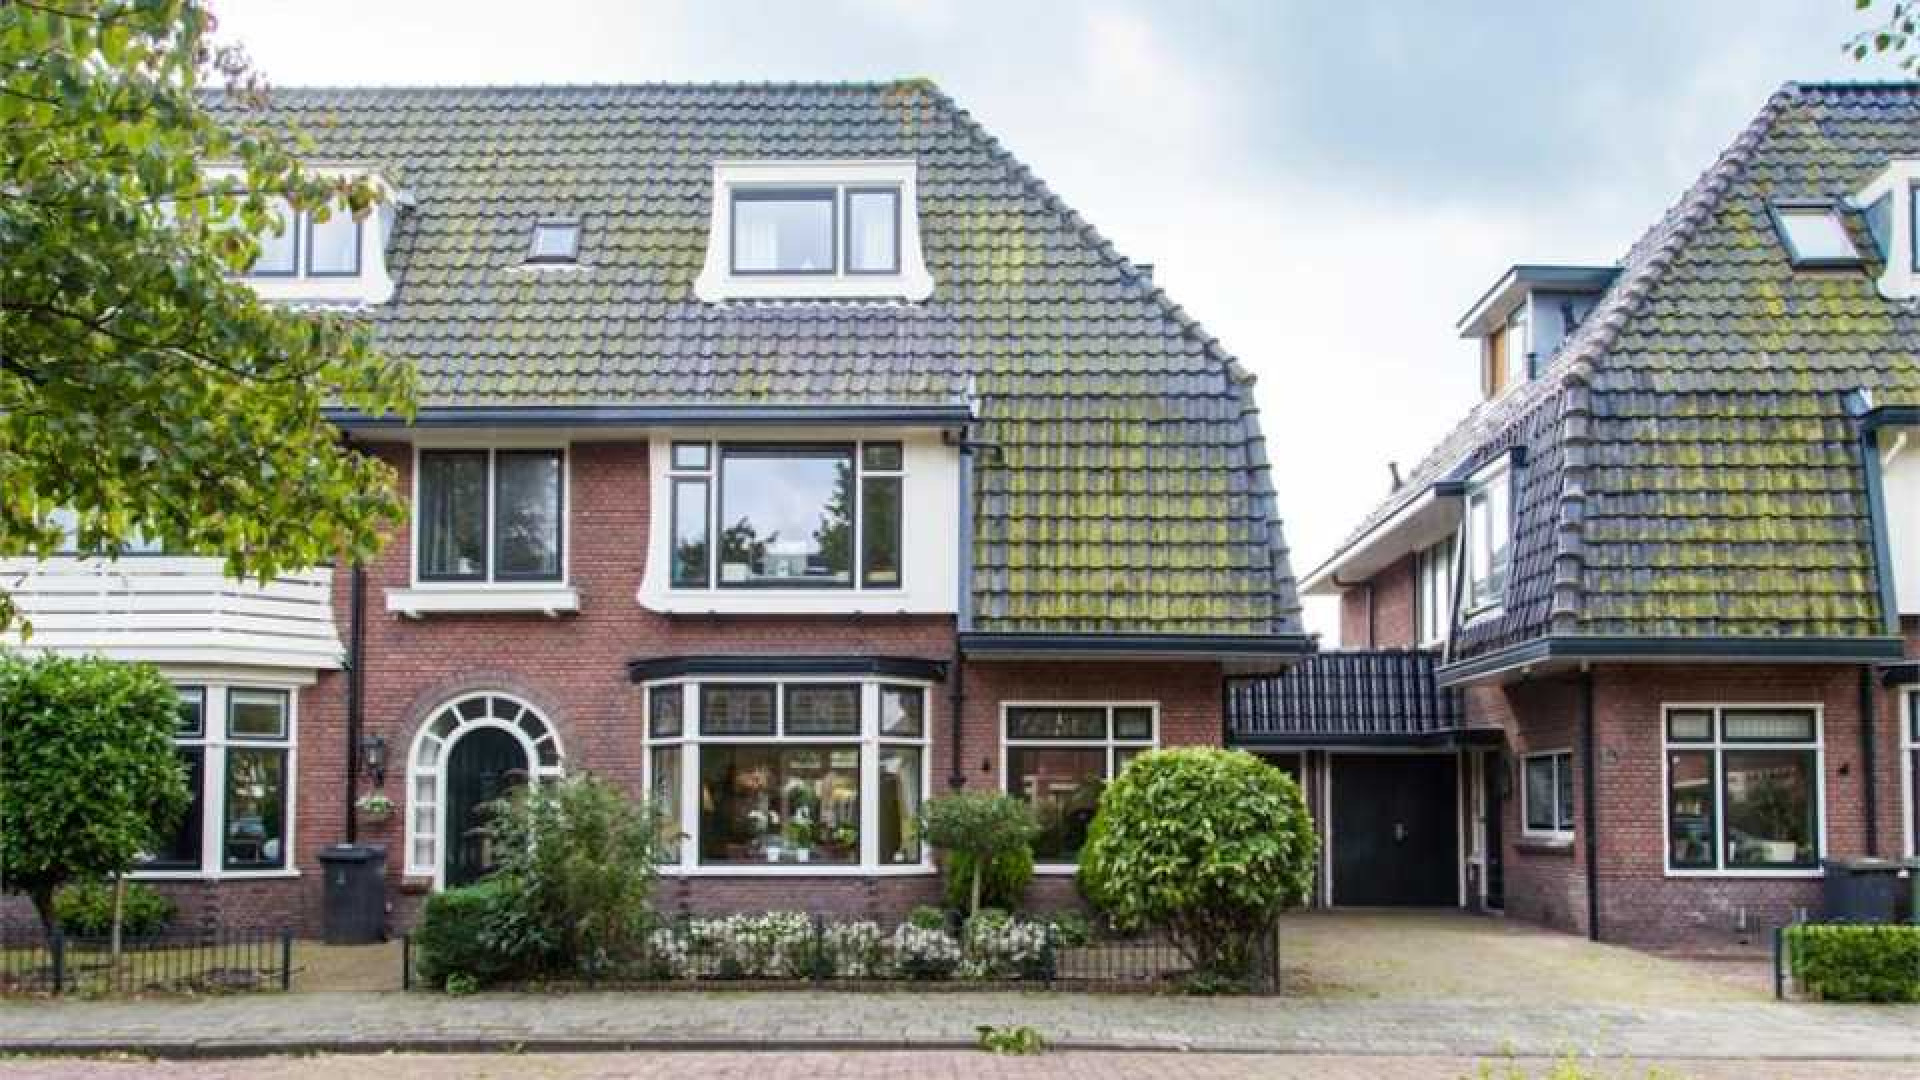 Alberto Stegeman koopt uit eigen zak voor bijna 1 miljoen villa in Heemstede. Zie foto's 1